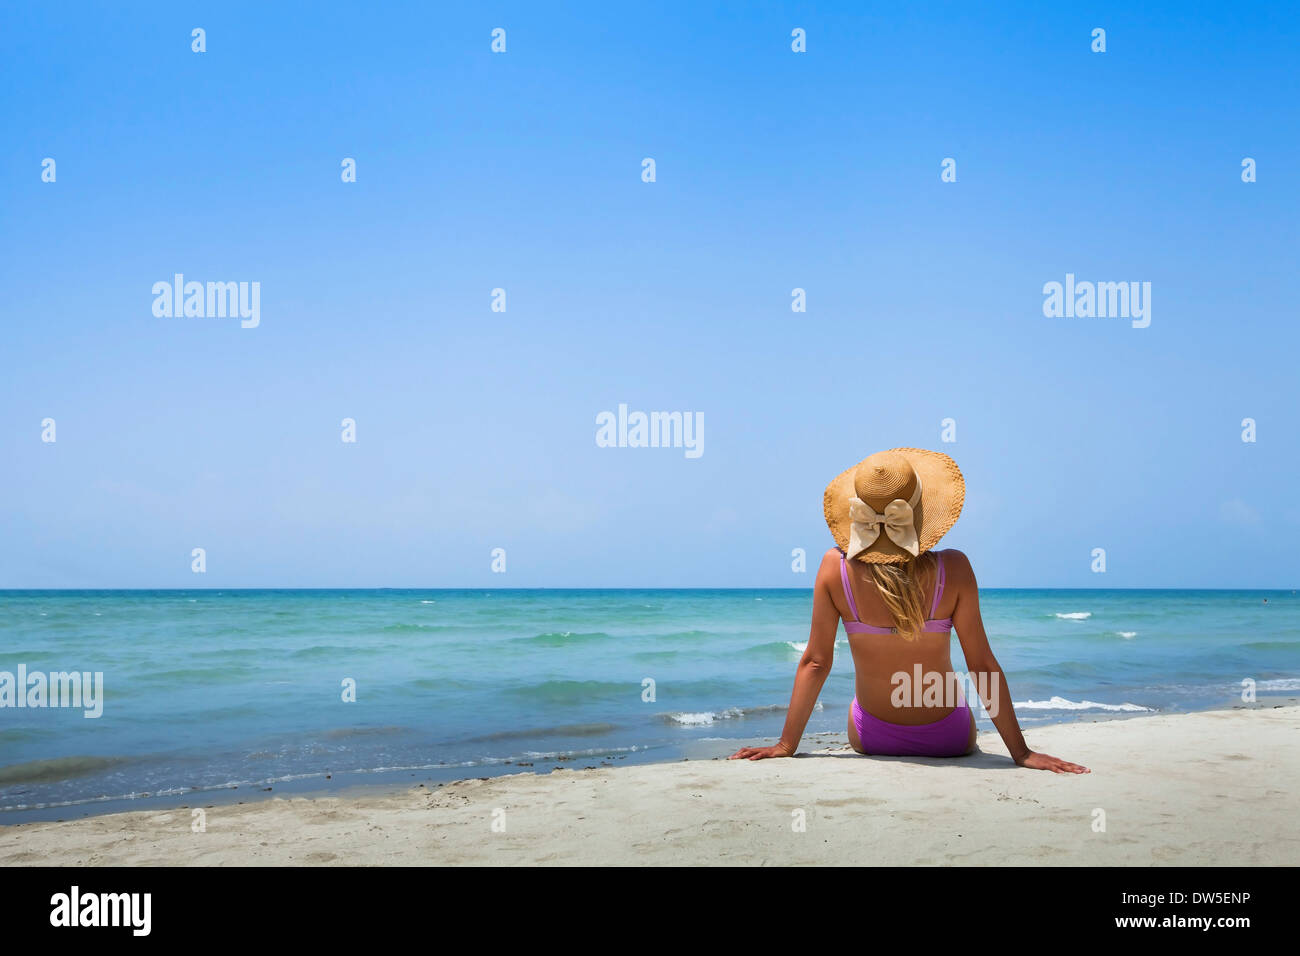 woman in bikini on the beach Stock Photo